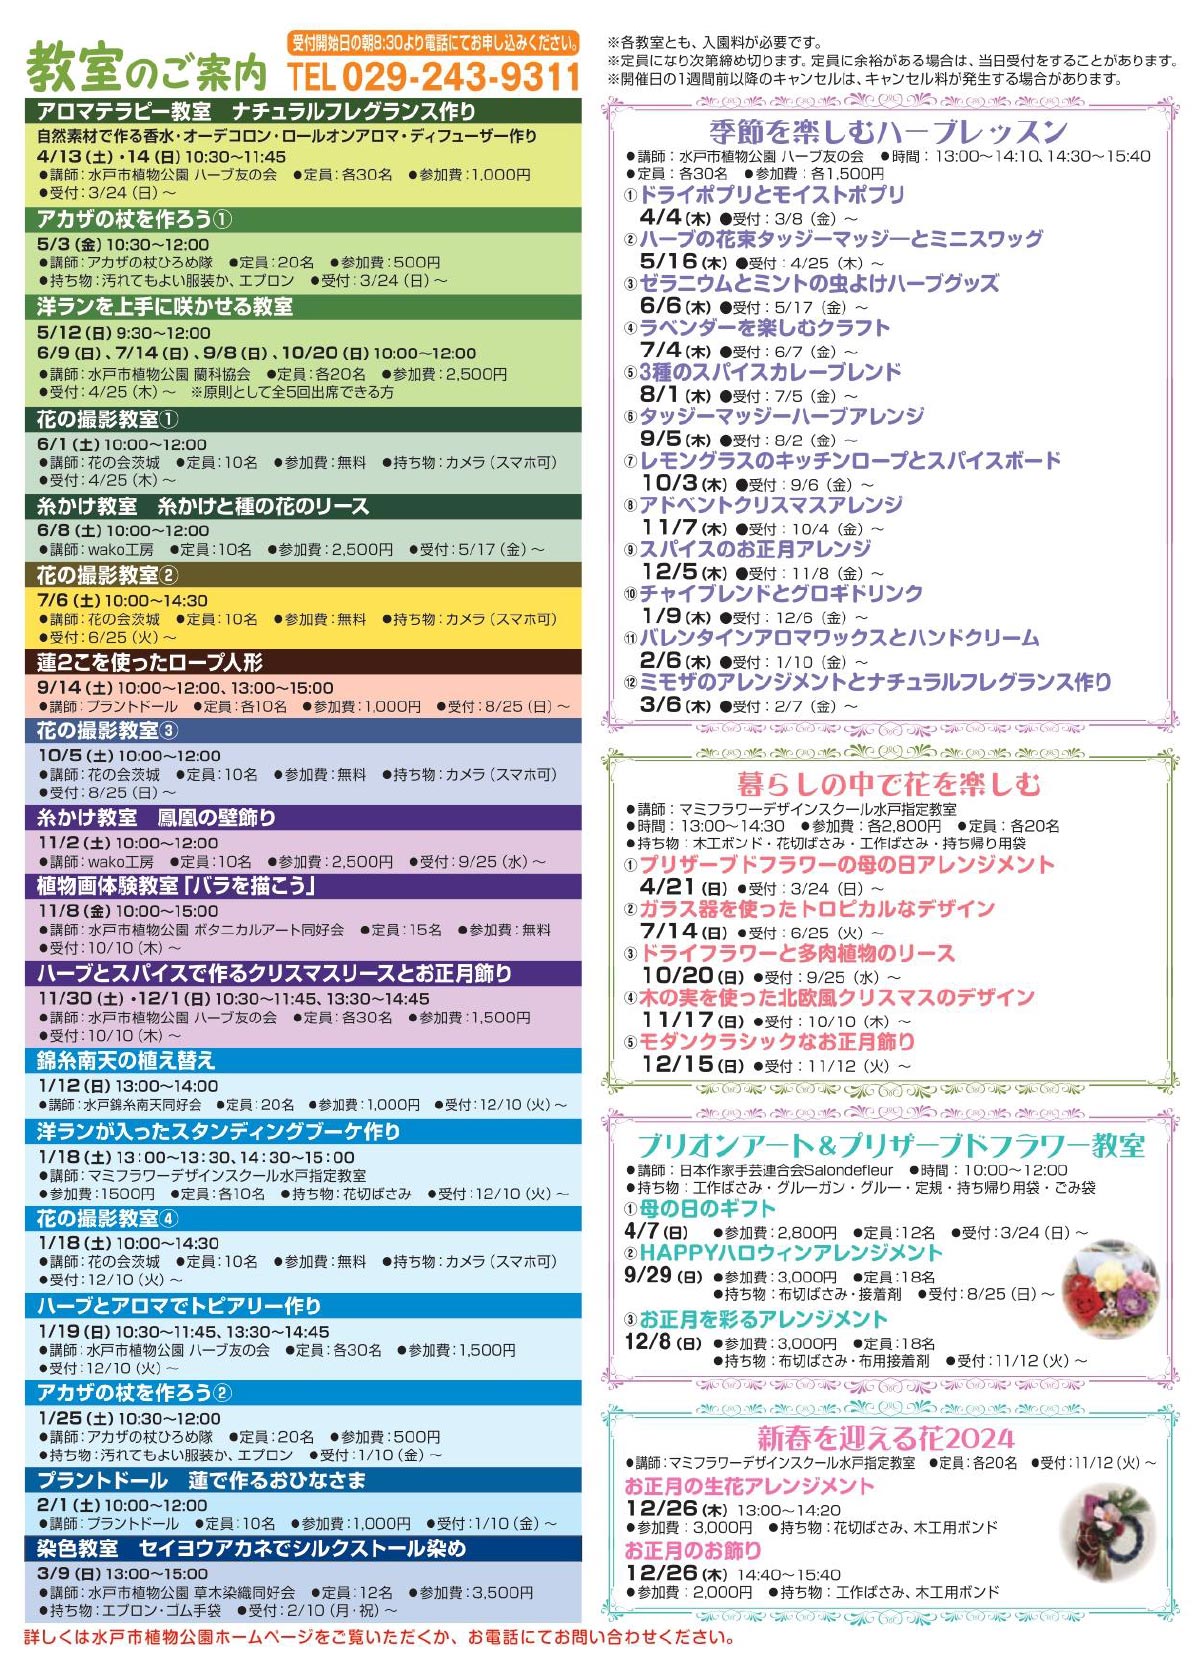 『花のカルチャー 2024イベントカレンダー』水戸市植物公園